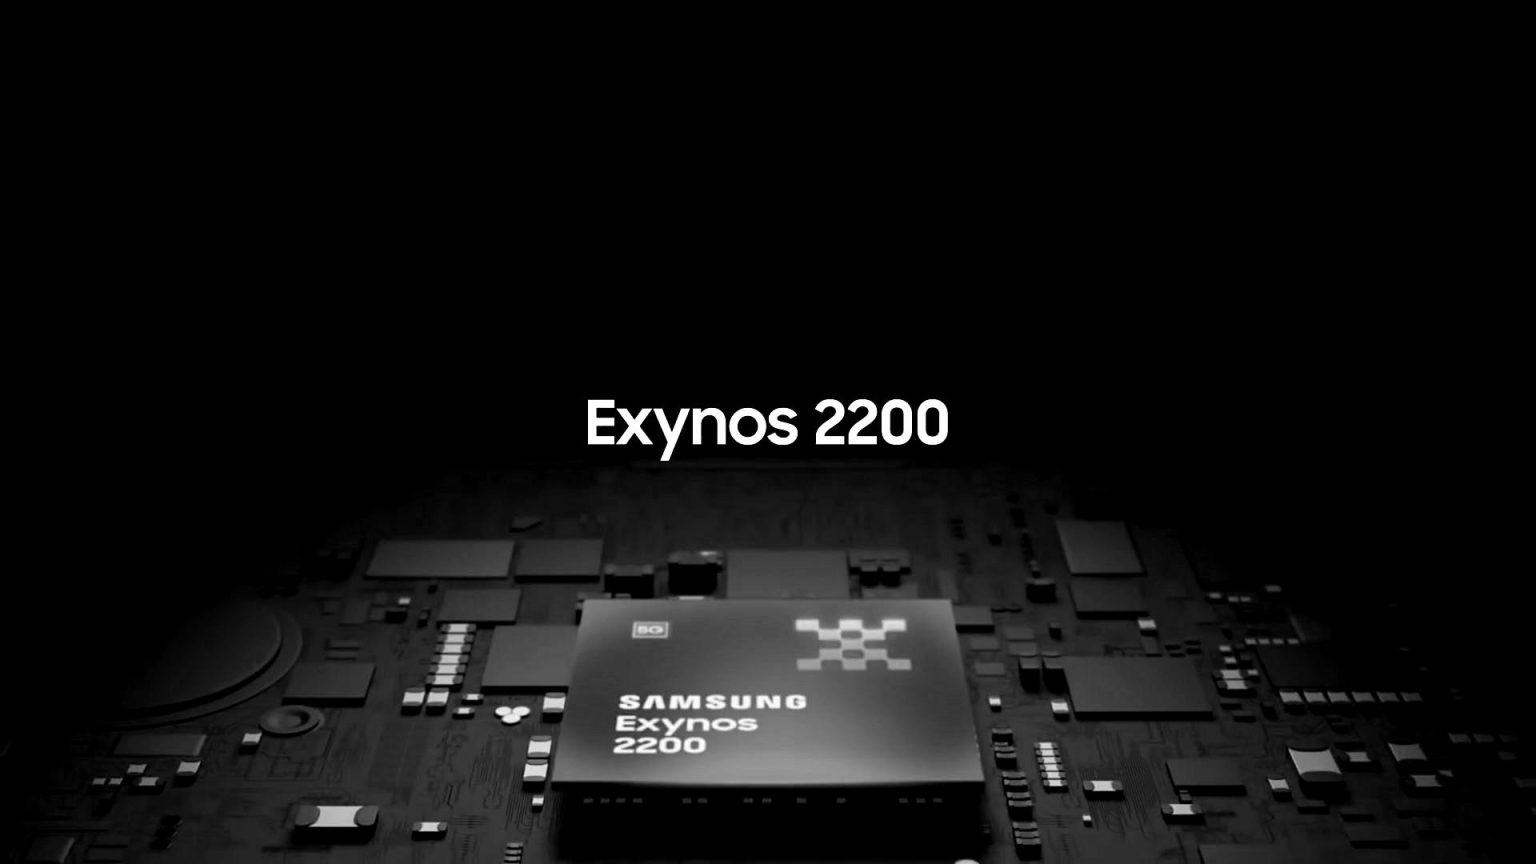 Ya salieron a la luz los primeros test de rendimiento den Exynos 2200 y la comparativa con el Snapdragon 8 Gen 1 no interesa a Samsung.